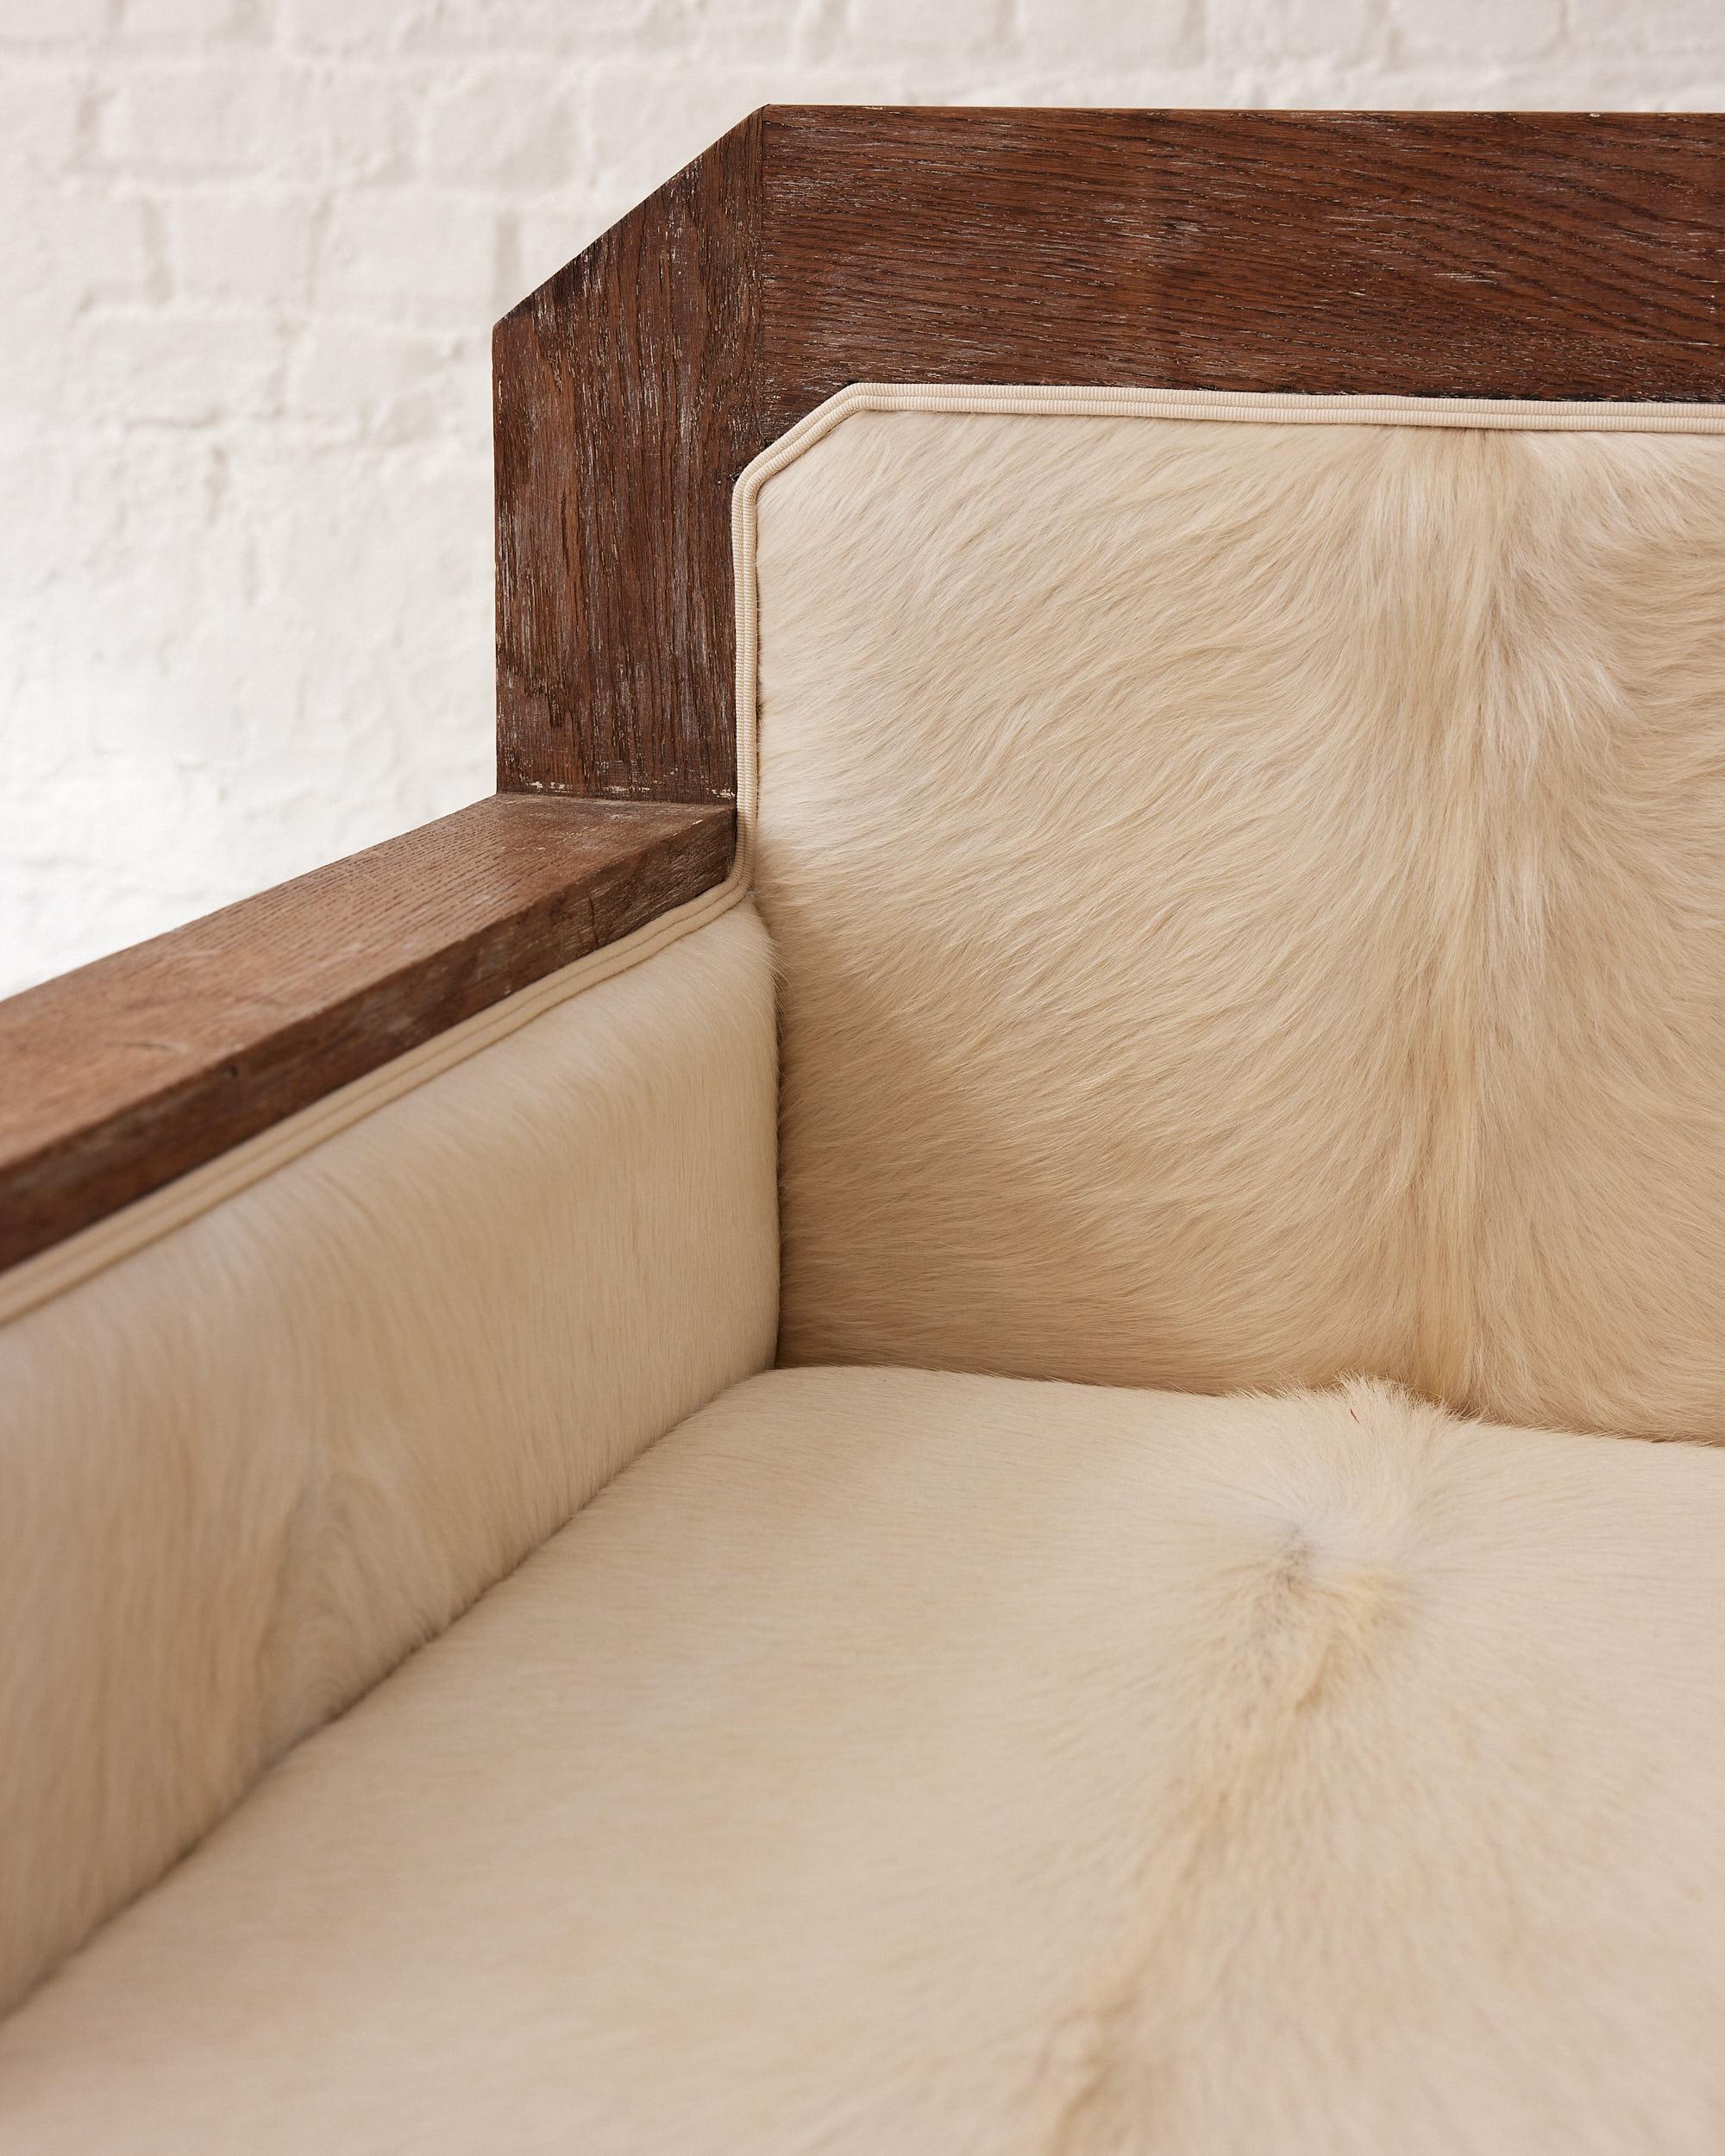 Der Art Deco Cow Skin Club Ceruse Oak Armchair ist ein Meisterwerk des Designs und der Handwerkskunst, importiert aus Frankreich mit den besten Materialien und Präzision. Das atemberaubende schwarz-weiße Rindsledermuster des Sessels ist sowohl